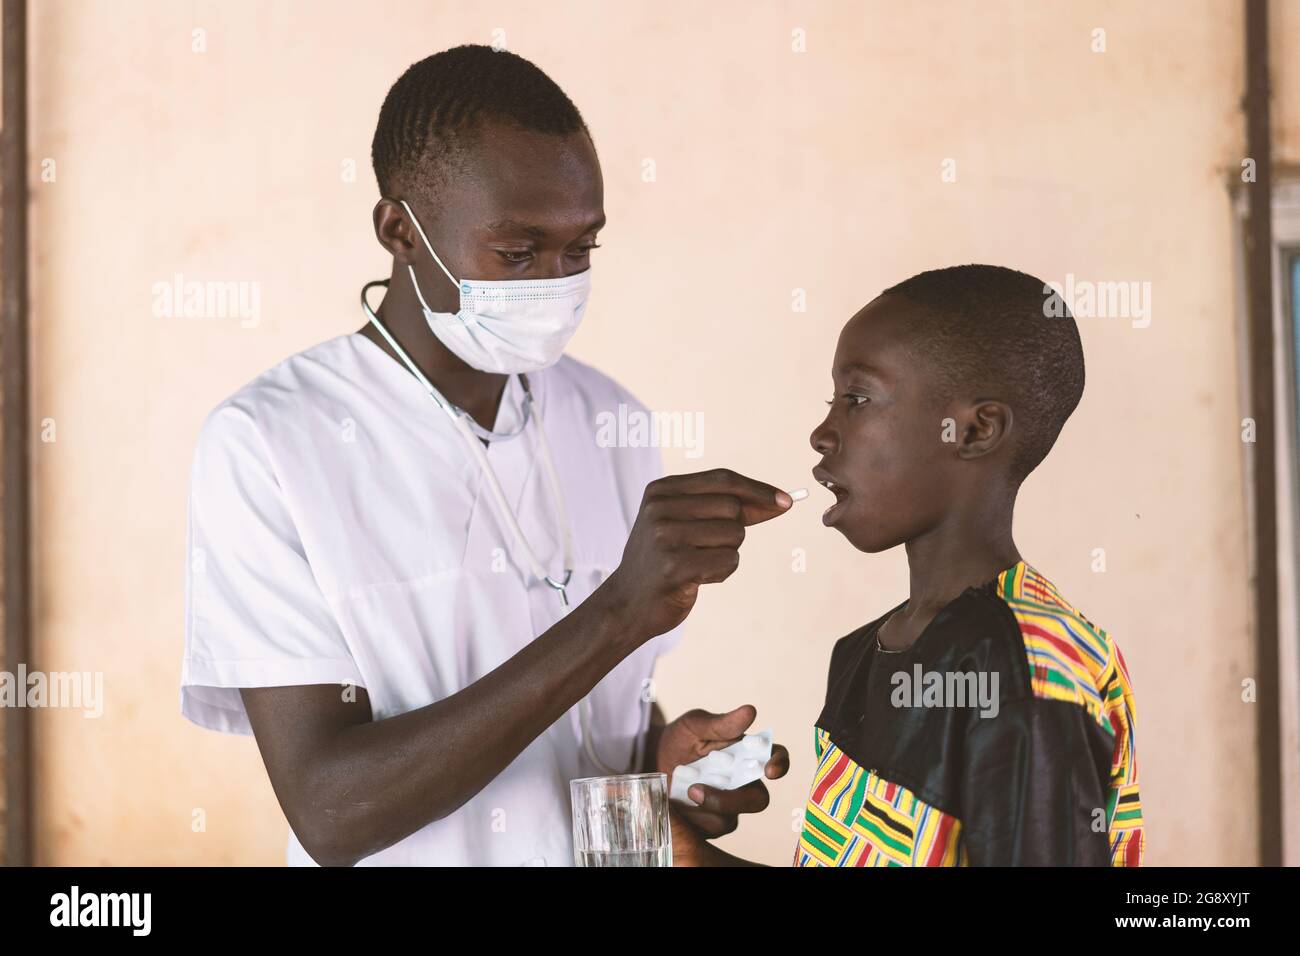 In questa immagine un giovane tirocinante medico che indossa una maschera facciale sta somministrando un medicamento orale ad un piccolo scolaro che collabora durante un'assistenza sanitaria c Foto Stock